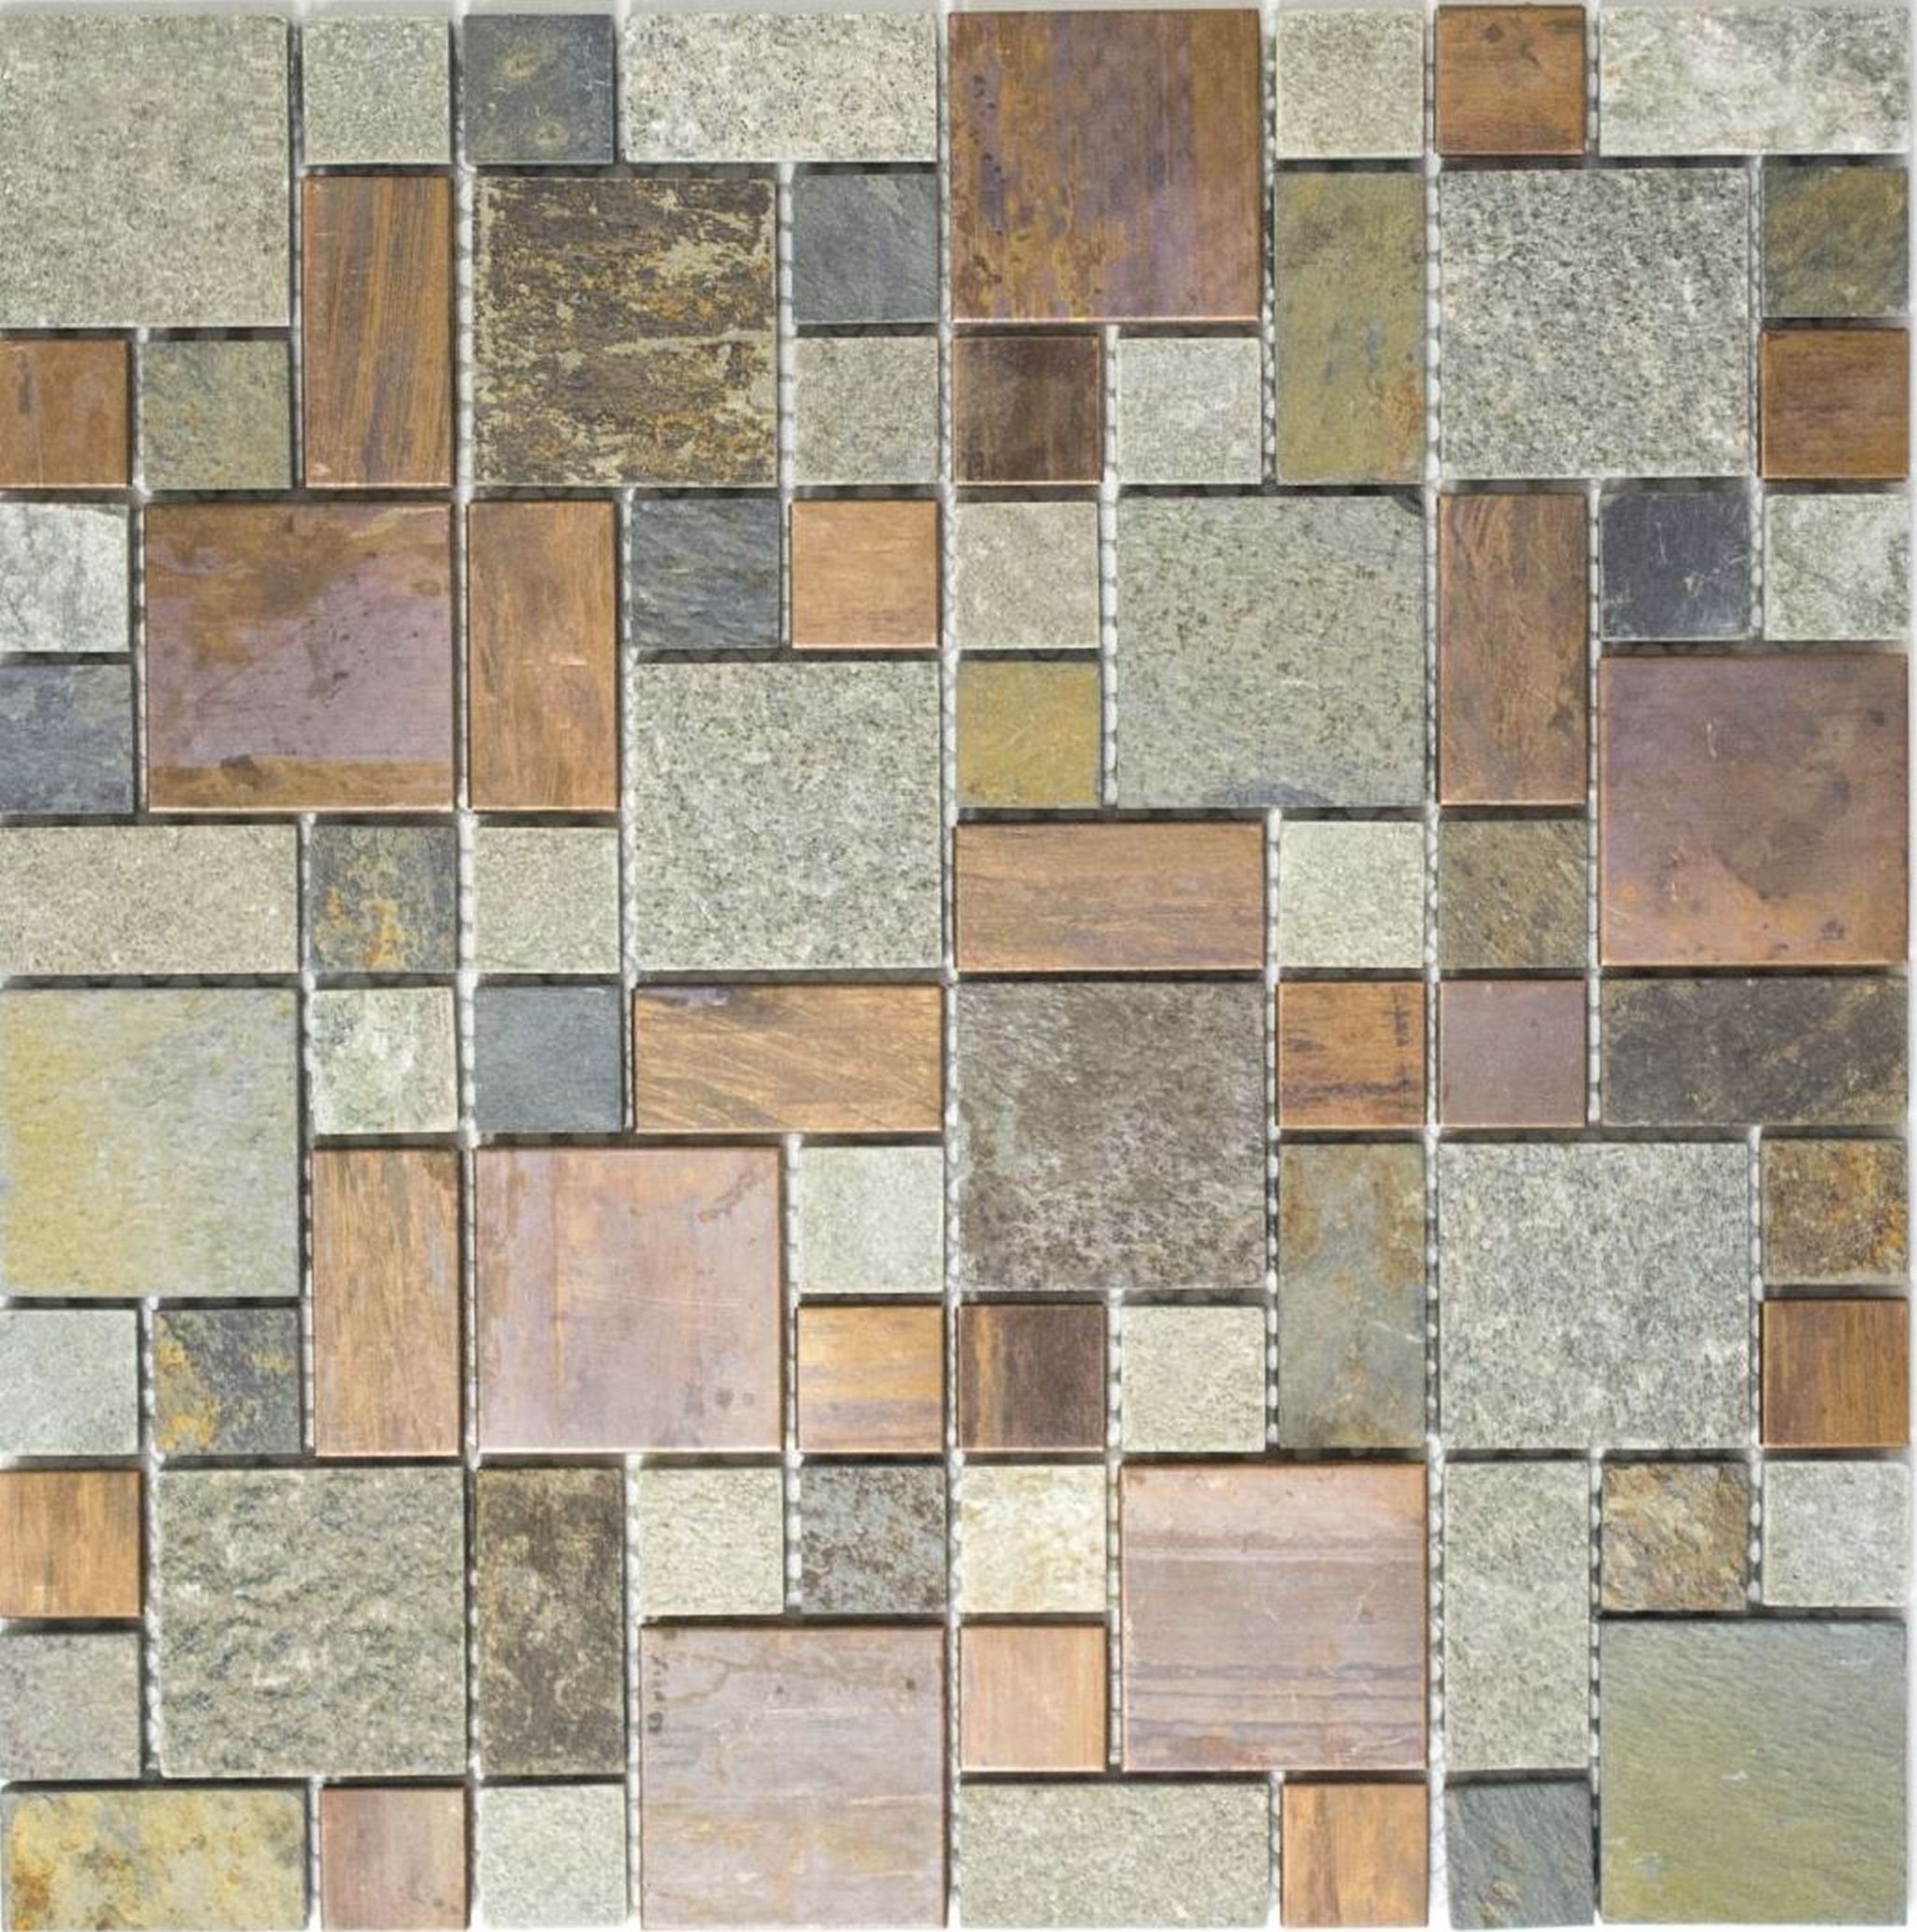 Mosani Mosaikfliesen Kombination rost Stein Küchenrückwand Kupfermosaik grau Fliese